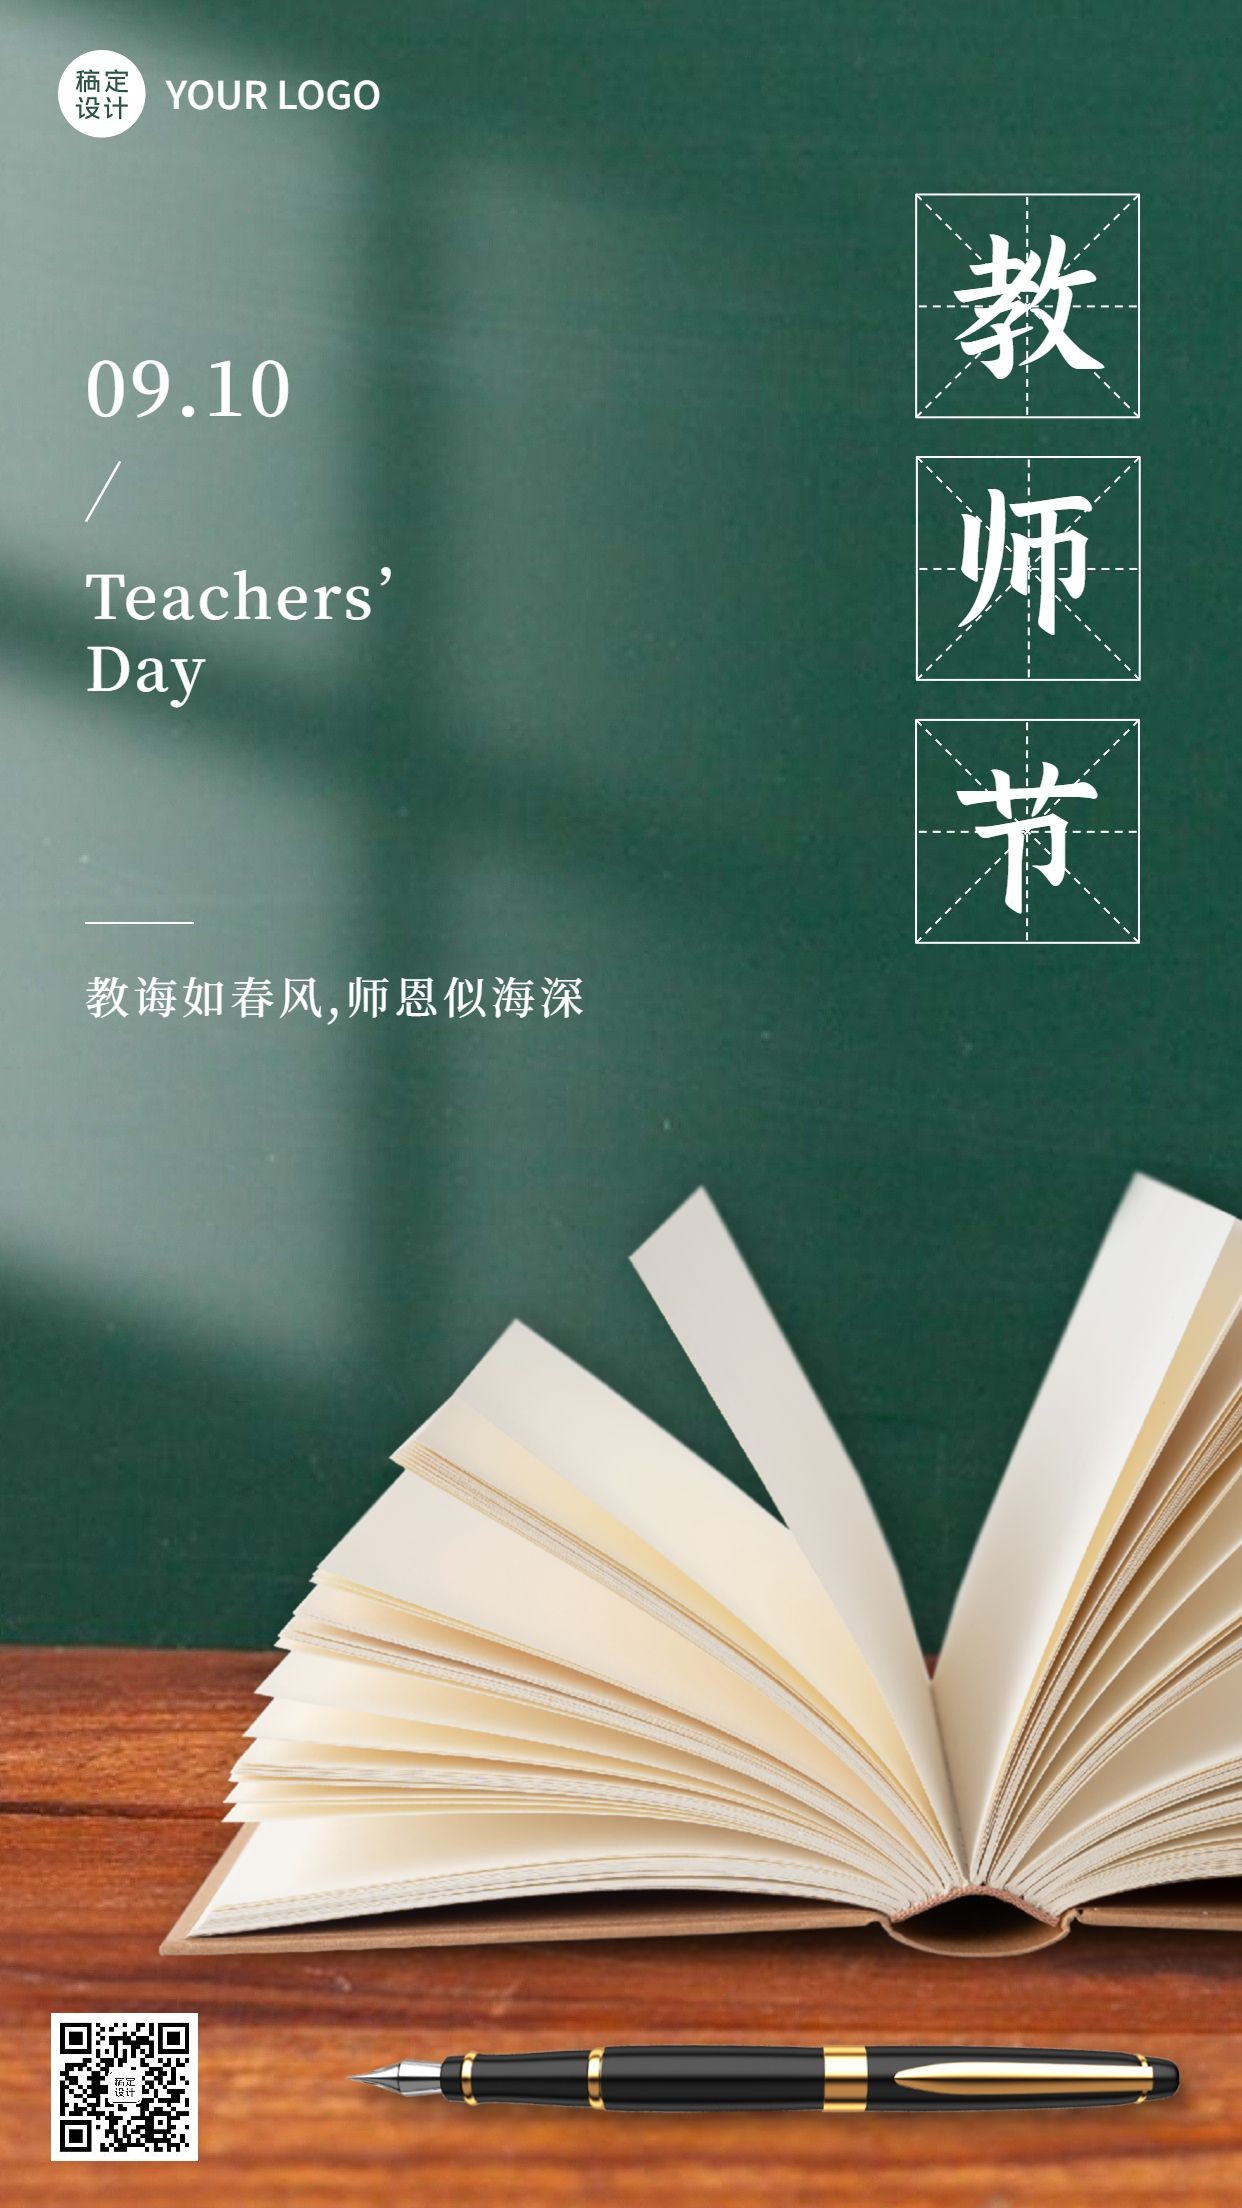 教师节节日祝福排版手机海报